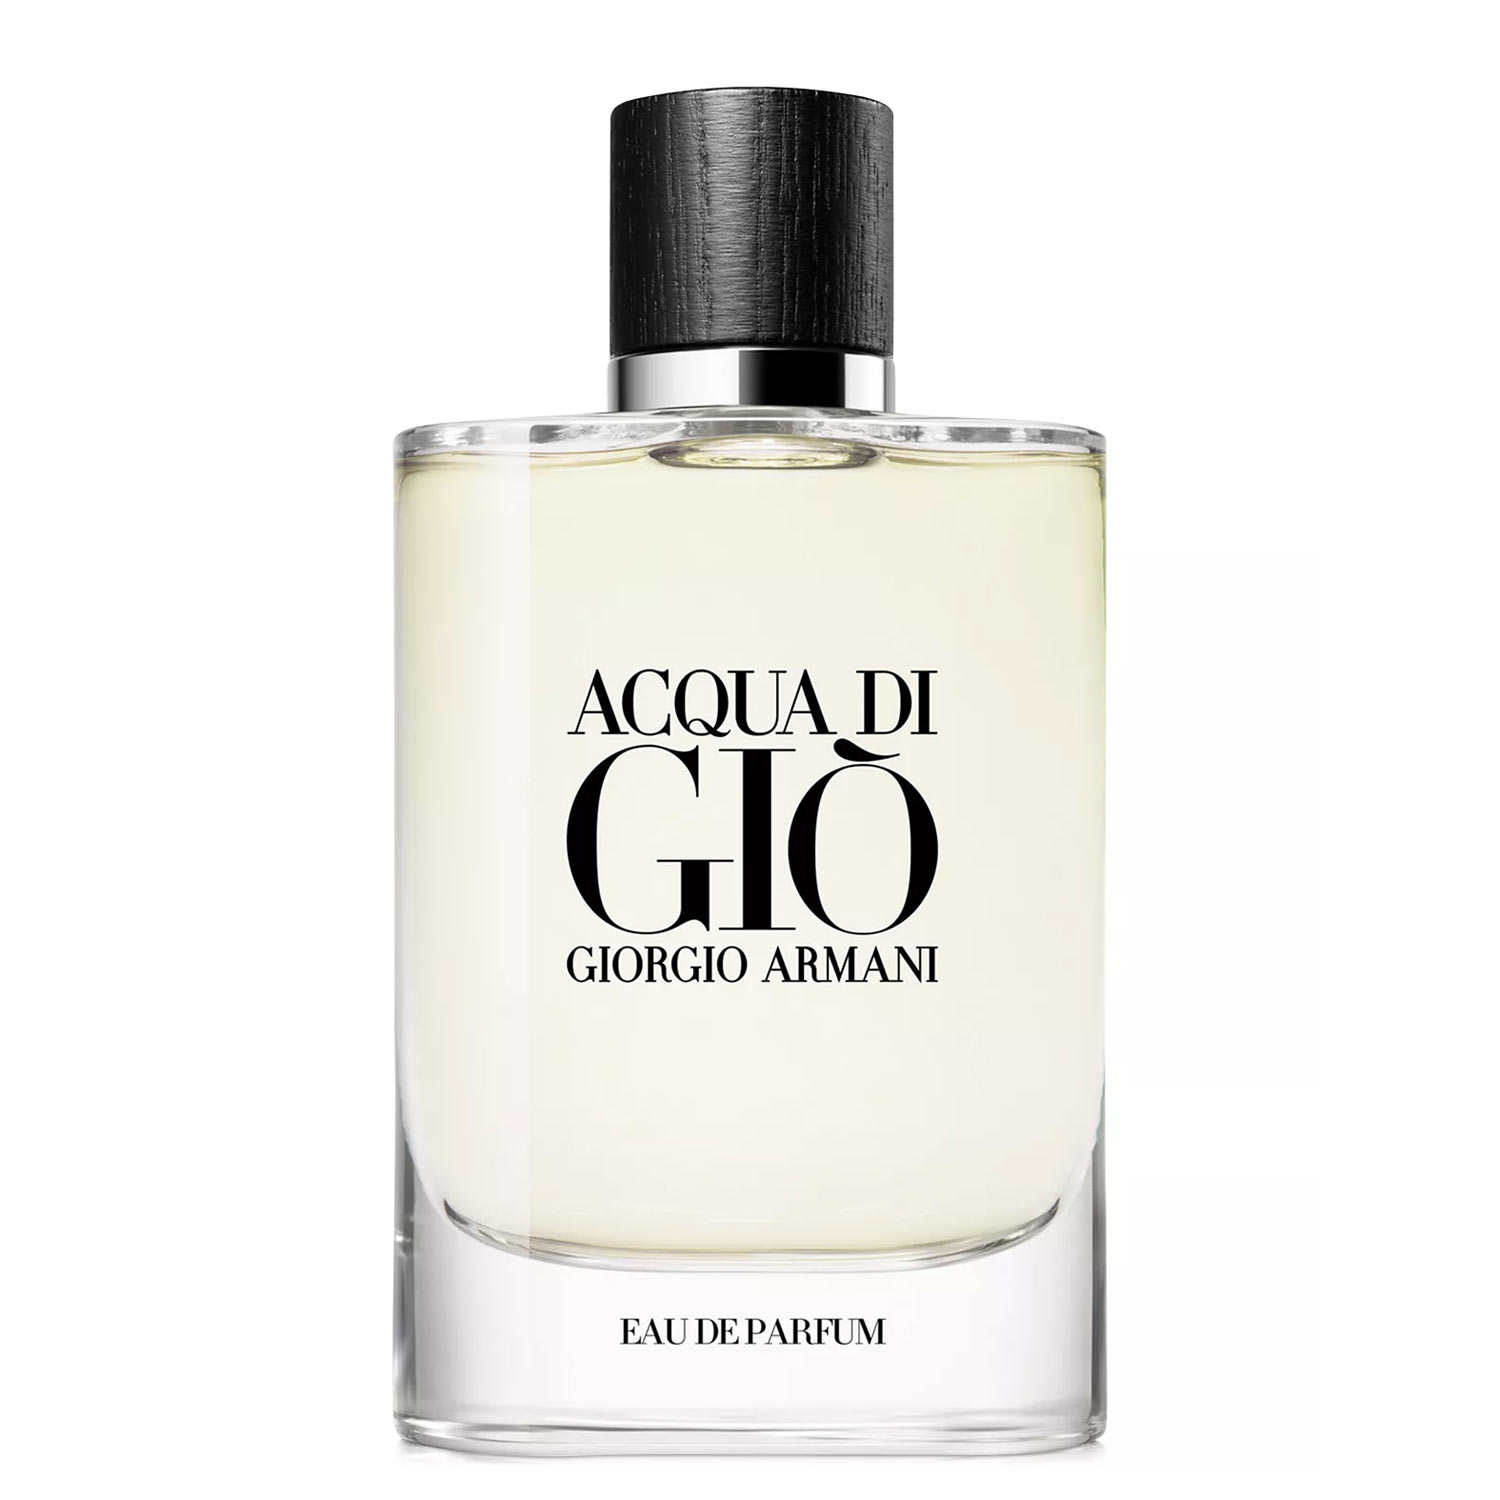 Acqua-Di-Gio-Eau-De-Parfum-Giorgio-Armani